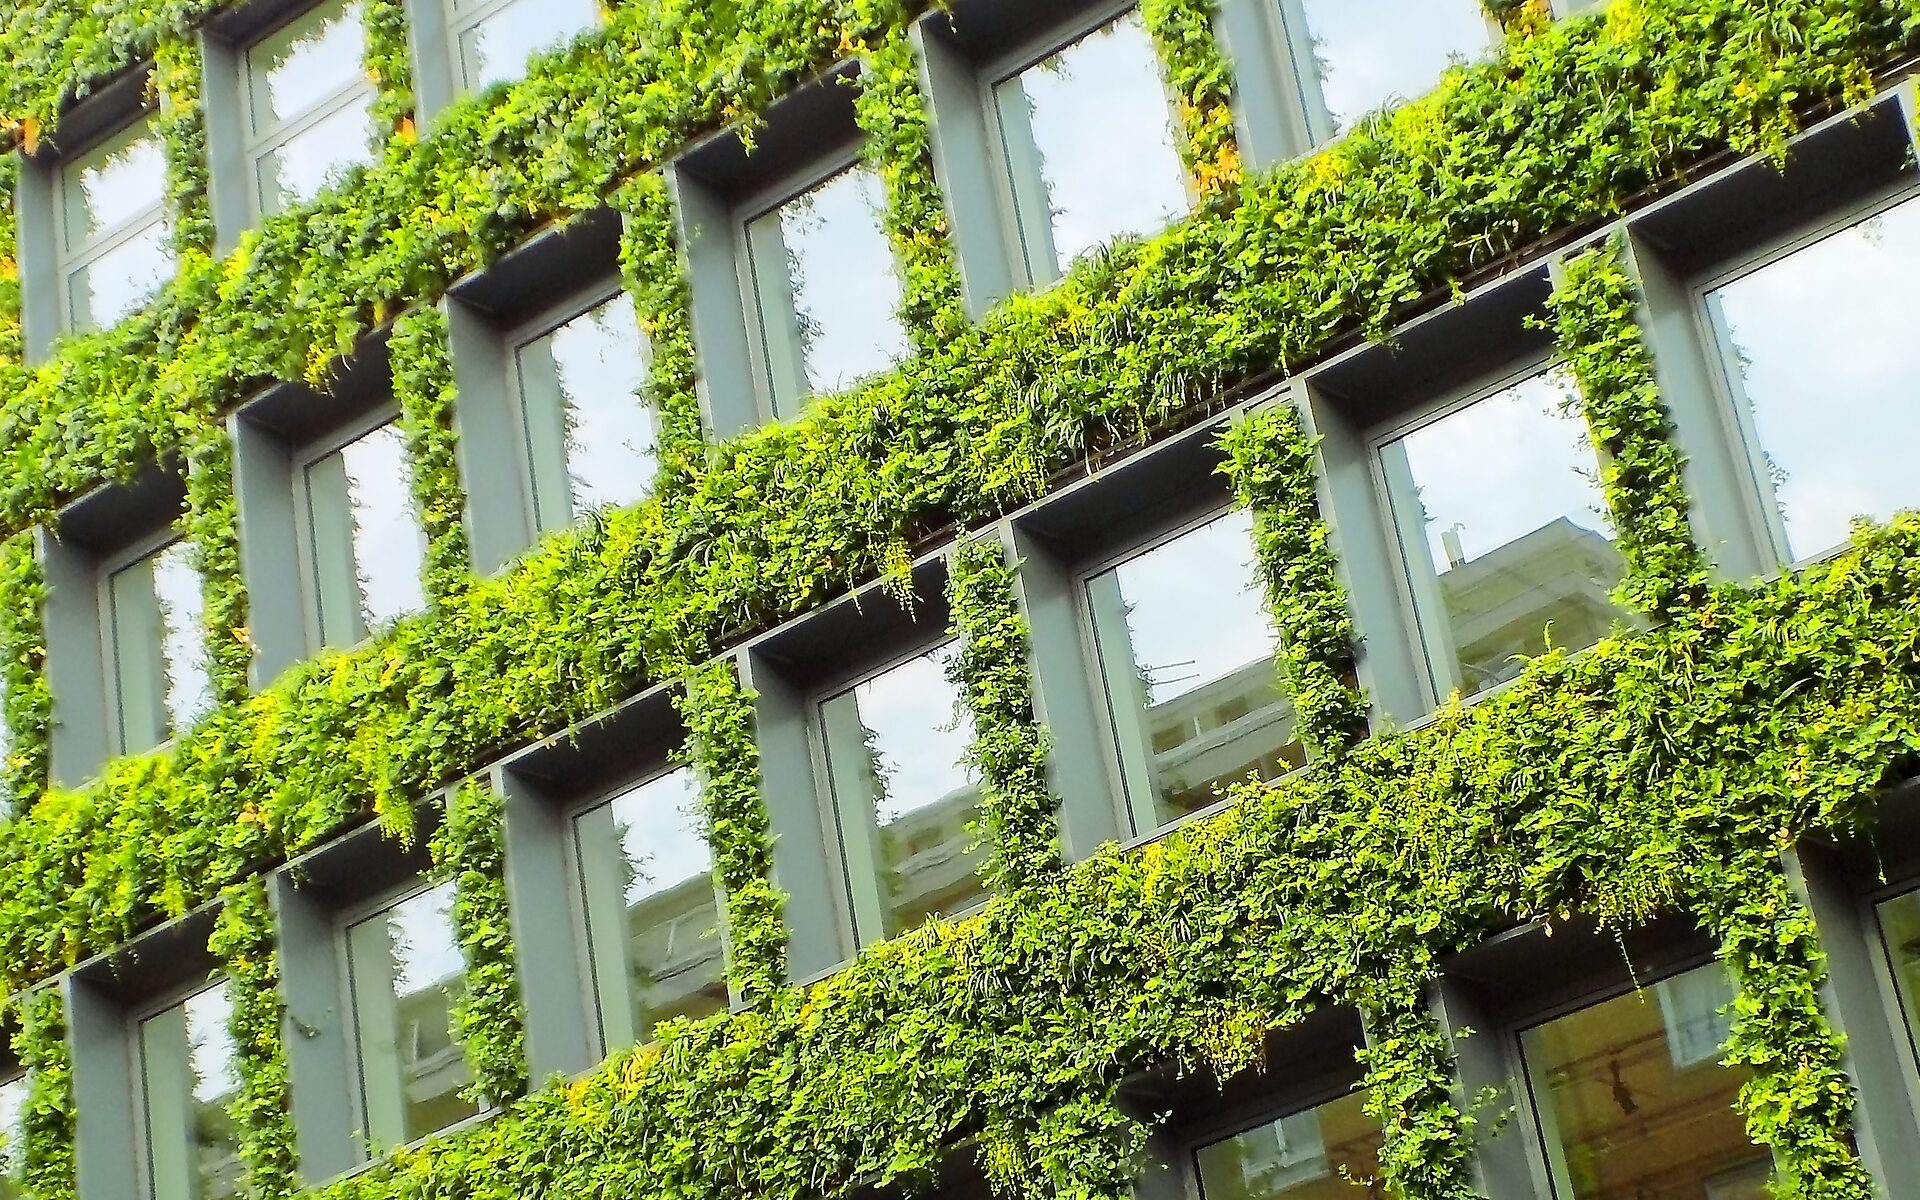 Edificio sostenible: Fachada viva que permite regular temperatura en el interior del edificio.